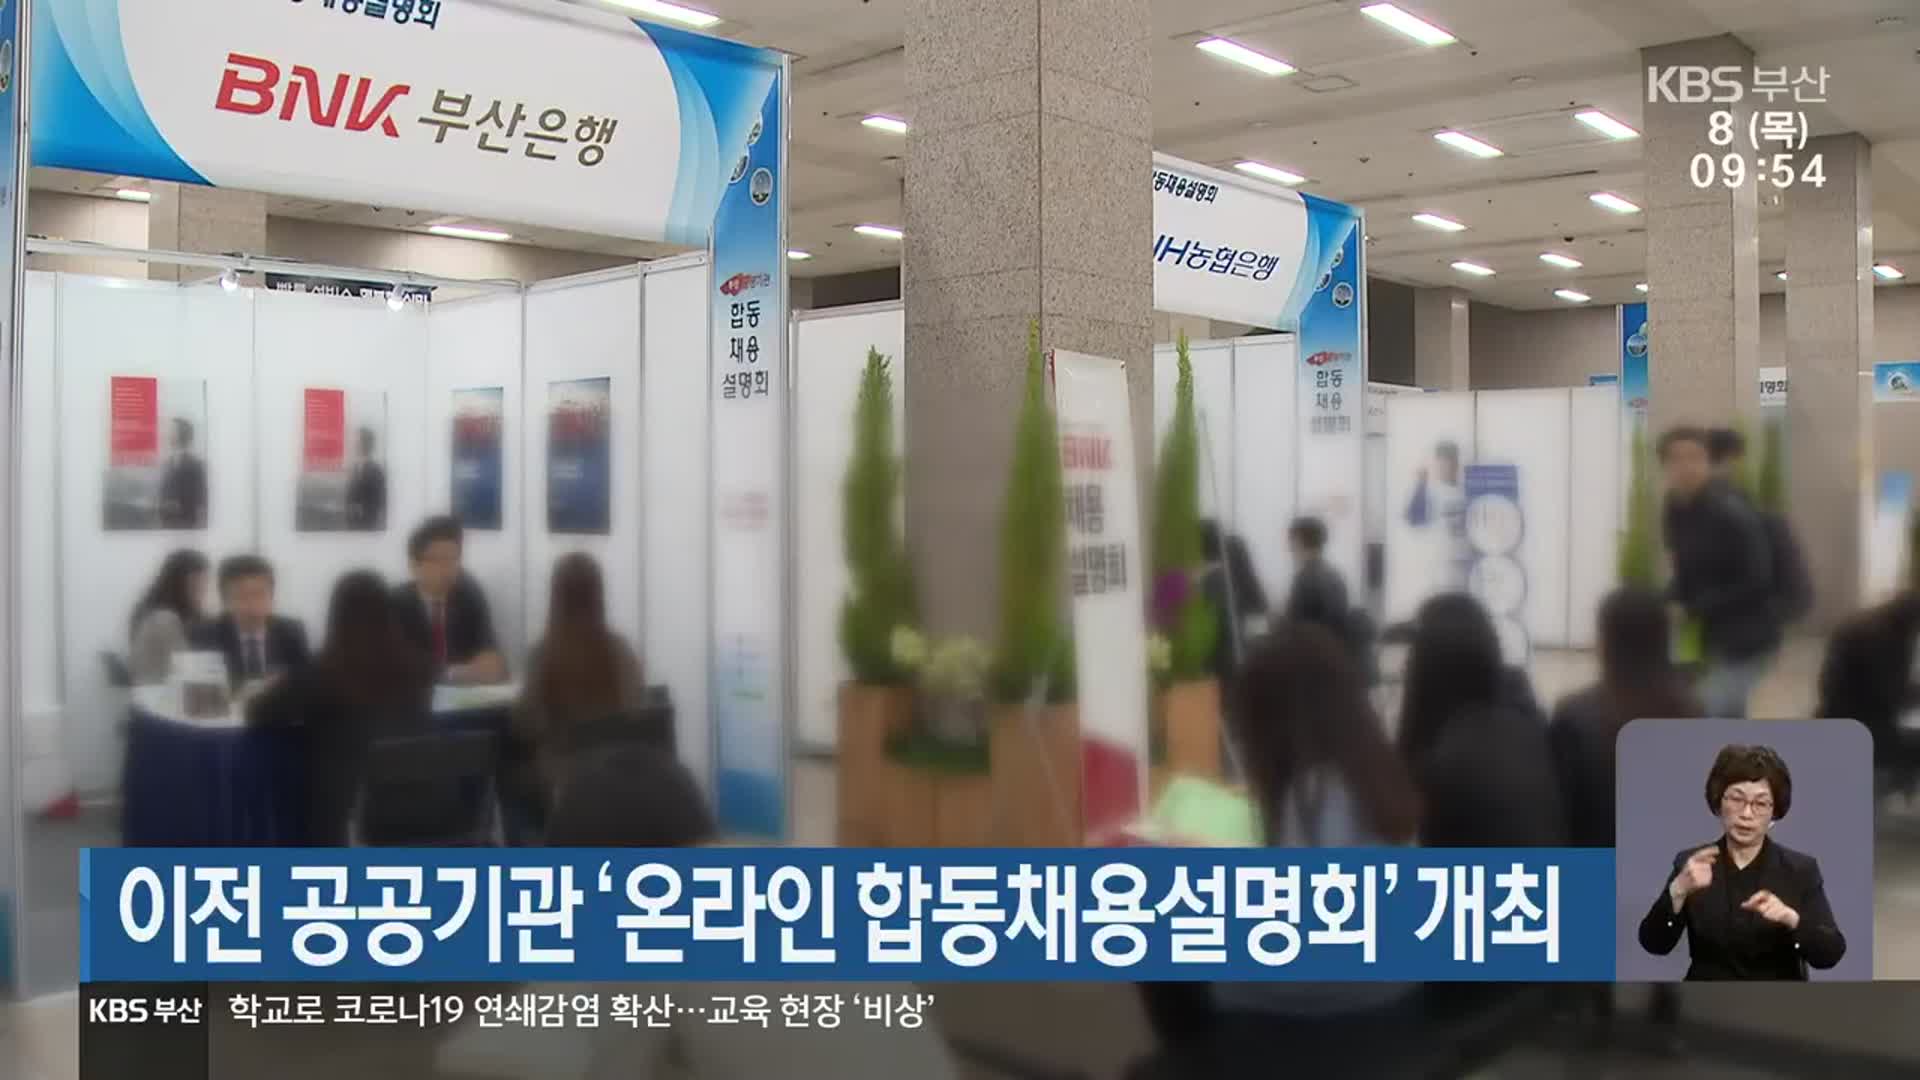 이전 공공기관 ‘온라인 합동채용설명회’ 개최